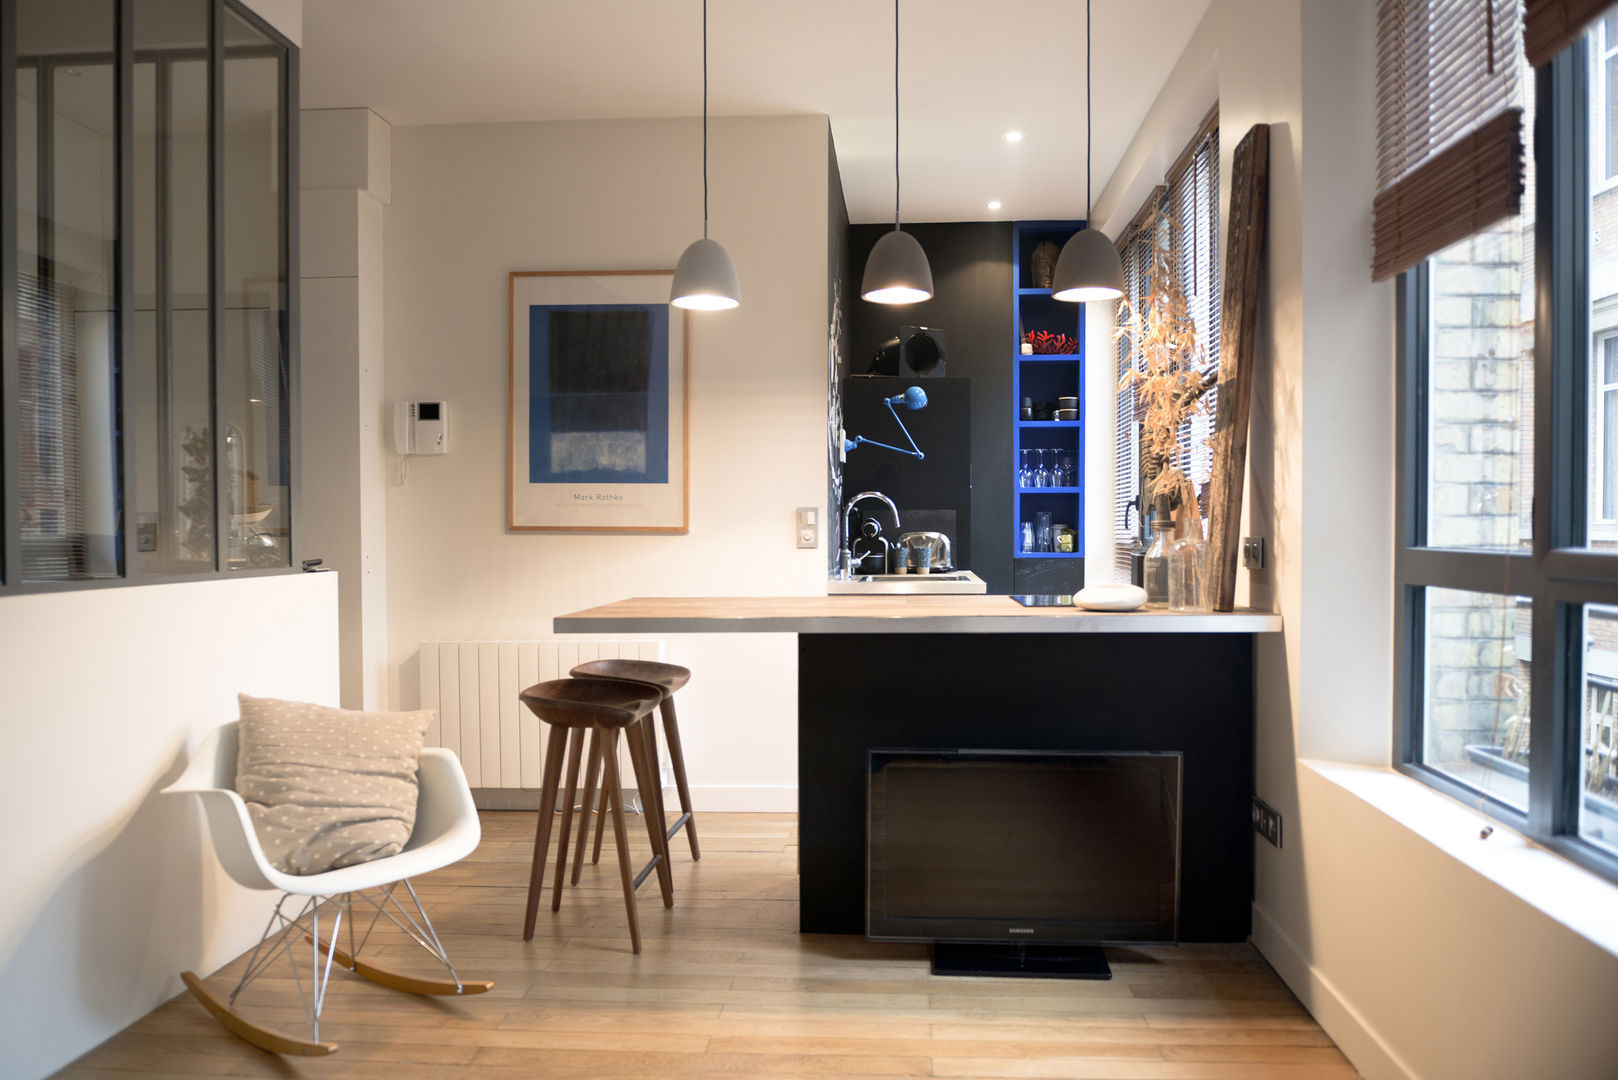 Rénovation Compléte d'un Ancien Bureau en Appartement, Atelier Grey Atelier Grey Modern kitchen